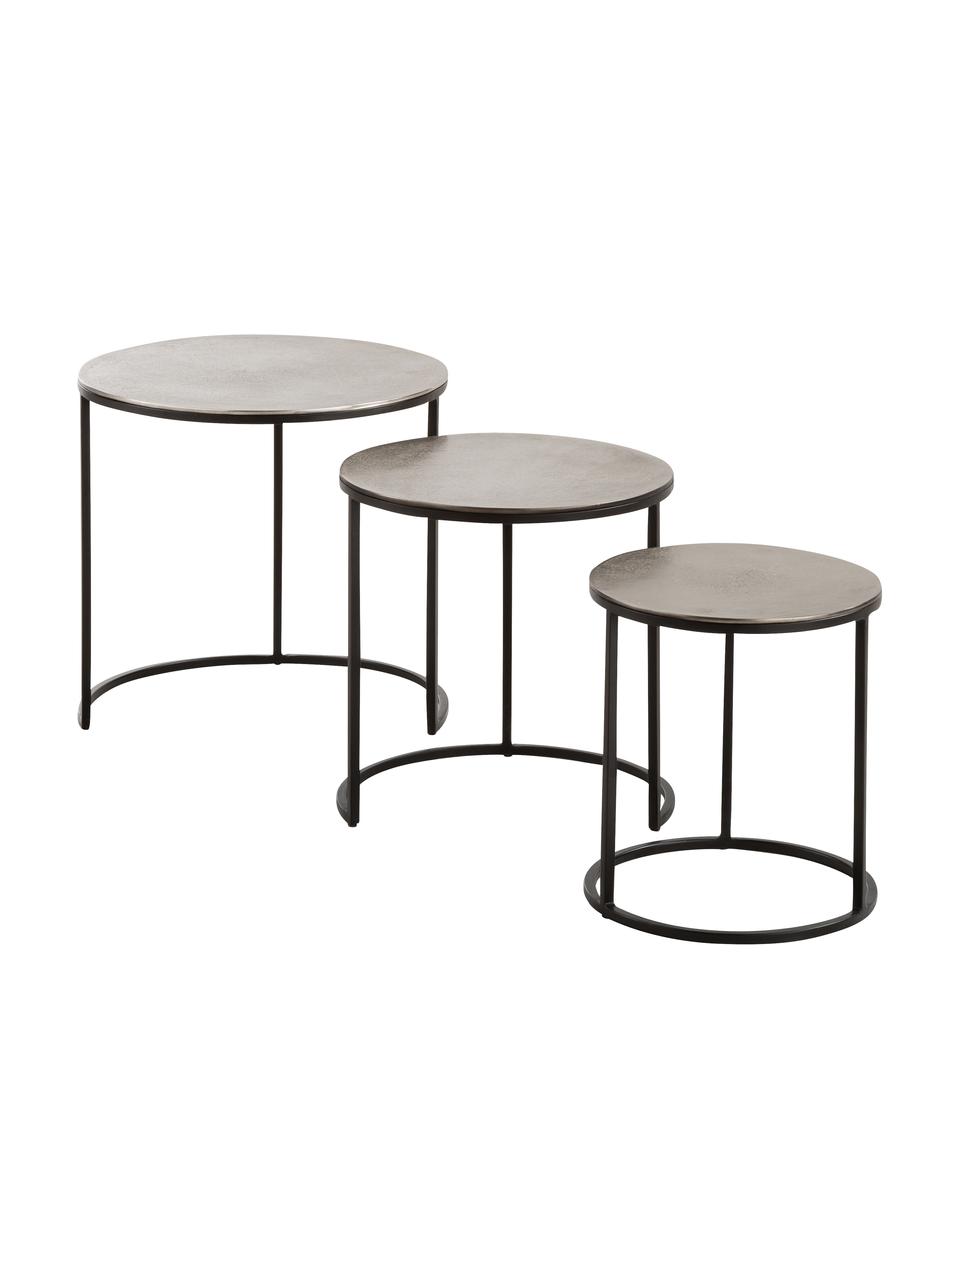 Komplet stolików pomocniczych Scott, 3 elem., Blat: aluminium powlekane, Stelaż: metal lakierowany, Odcienie srebrnego, czarny, Komplet z różnymi rozmiarami